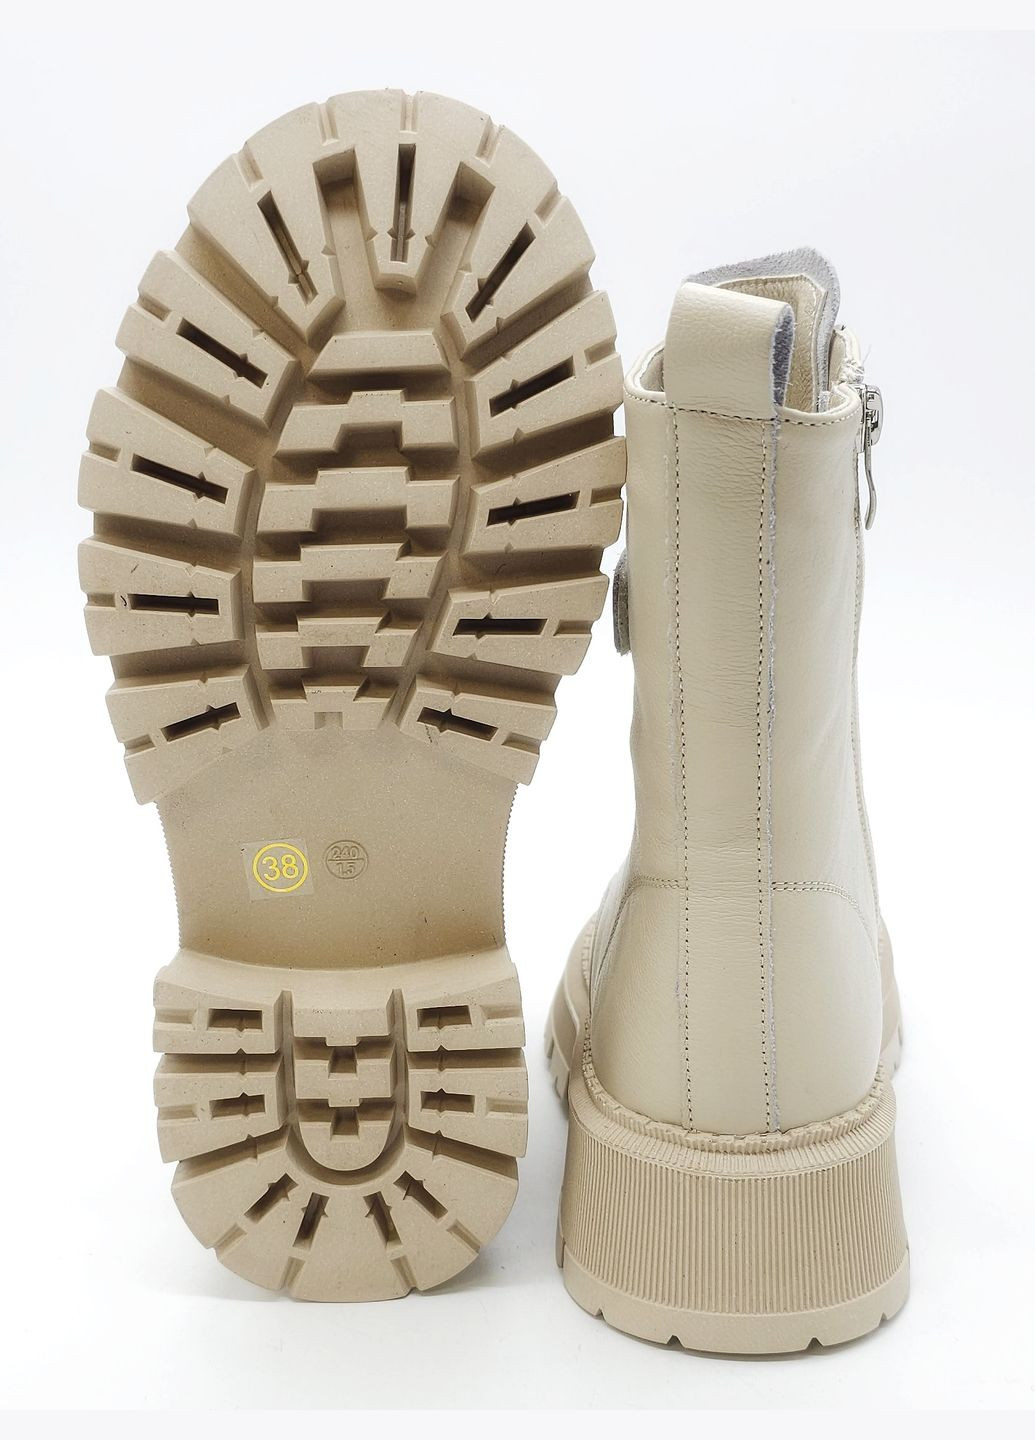 Осенние женские ботинки зимние молочные кожаные l-16-23 23 см (р) Lonza